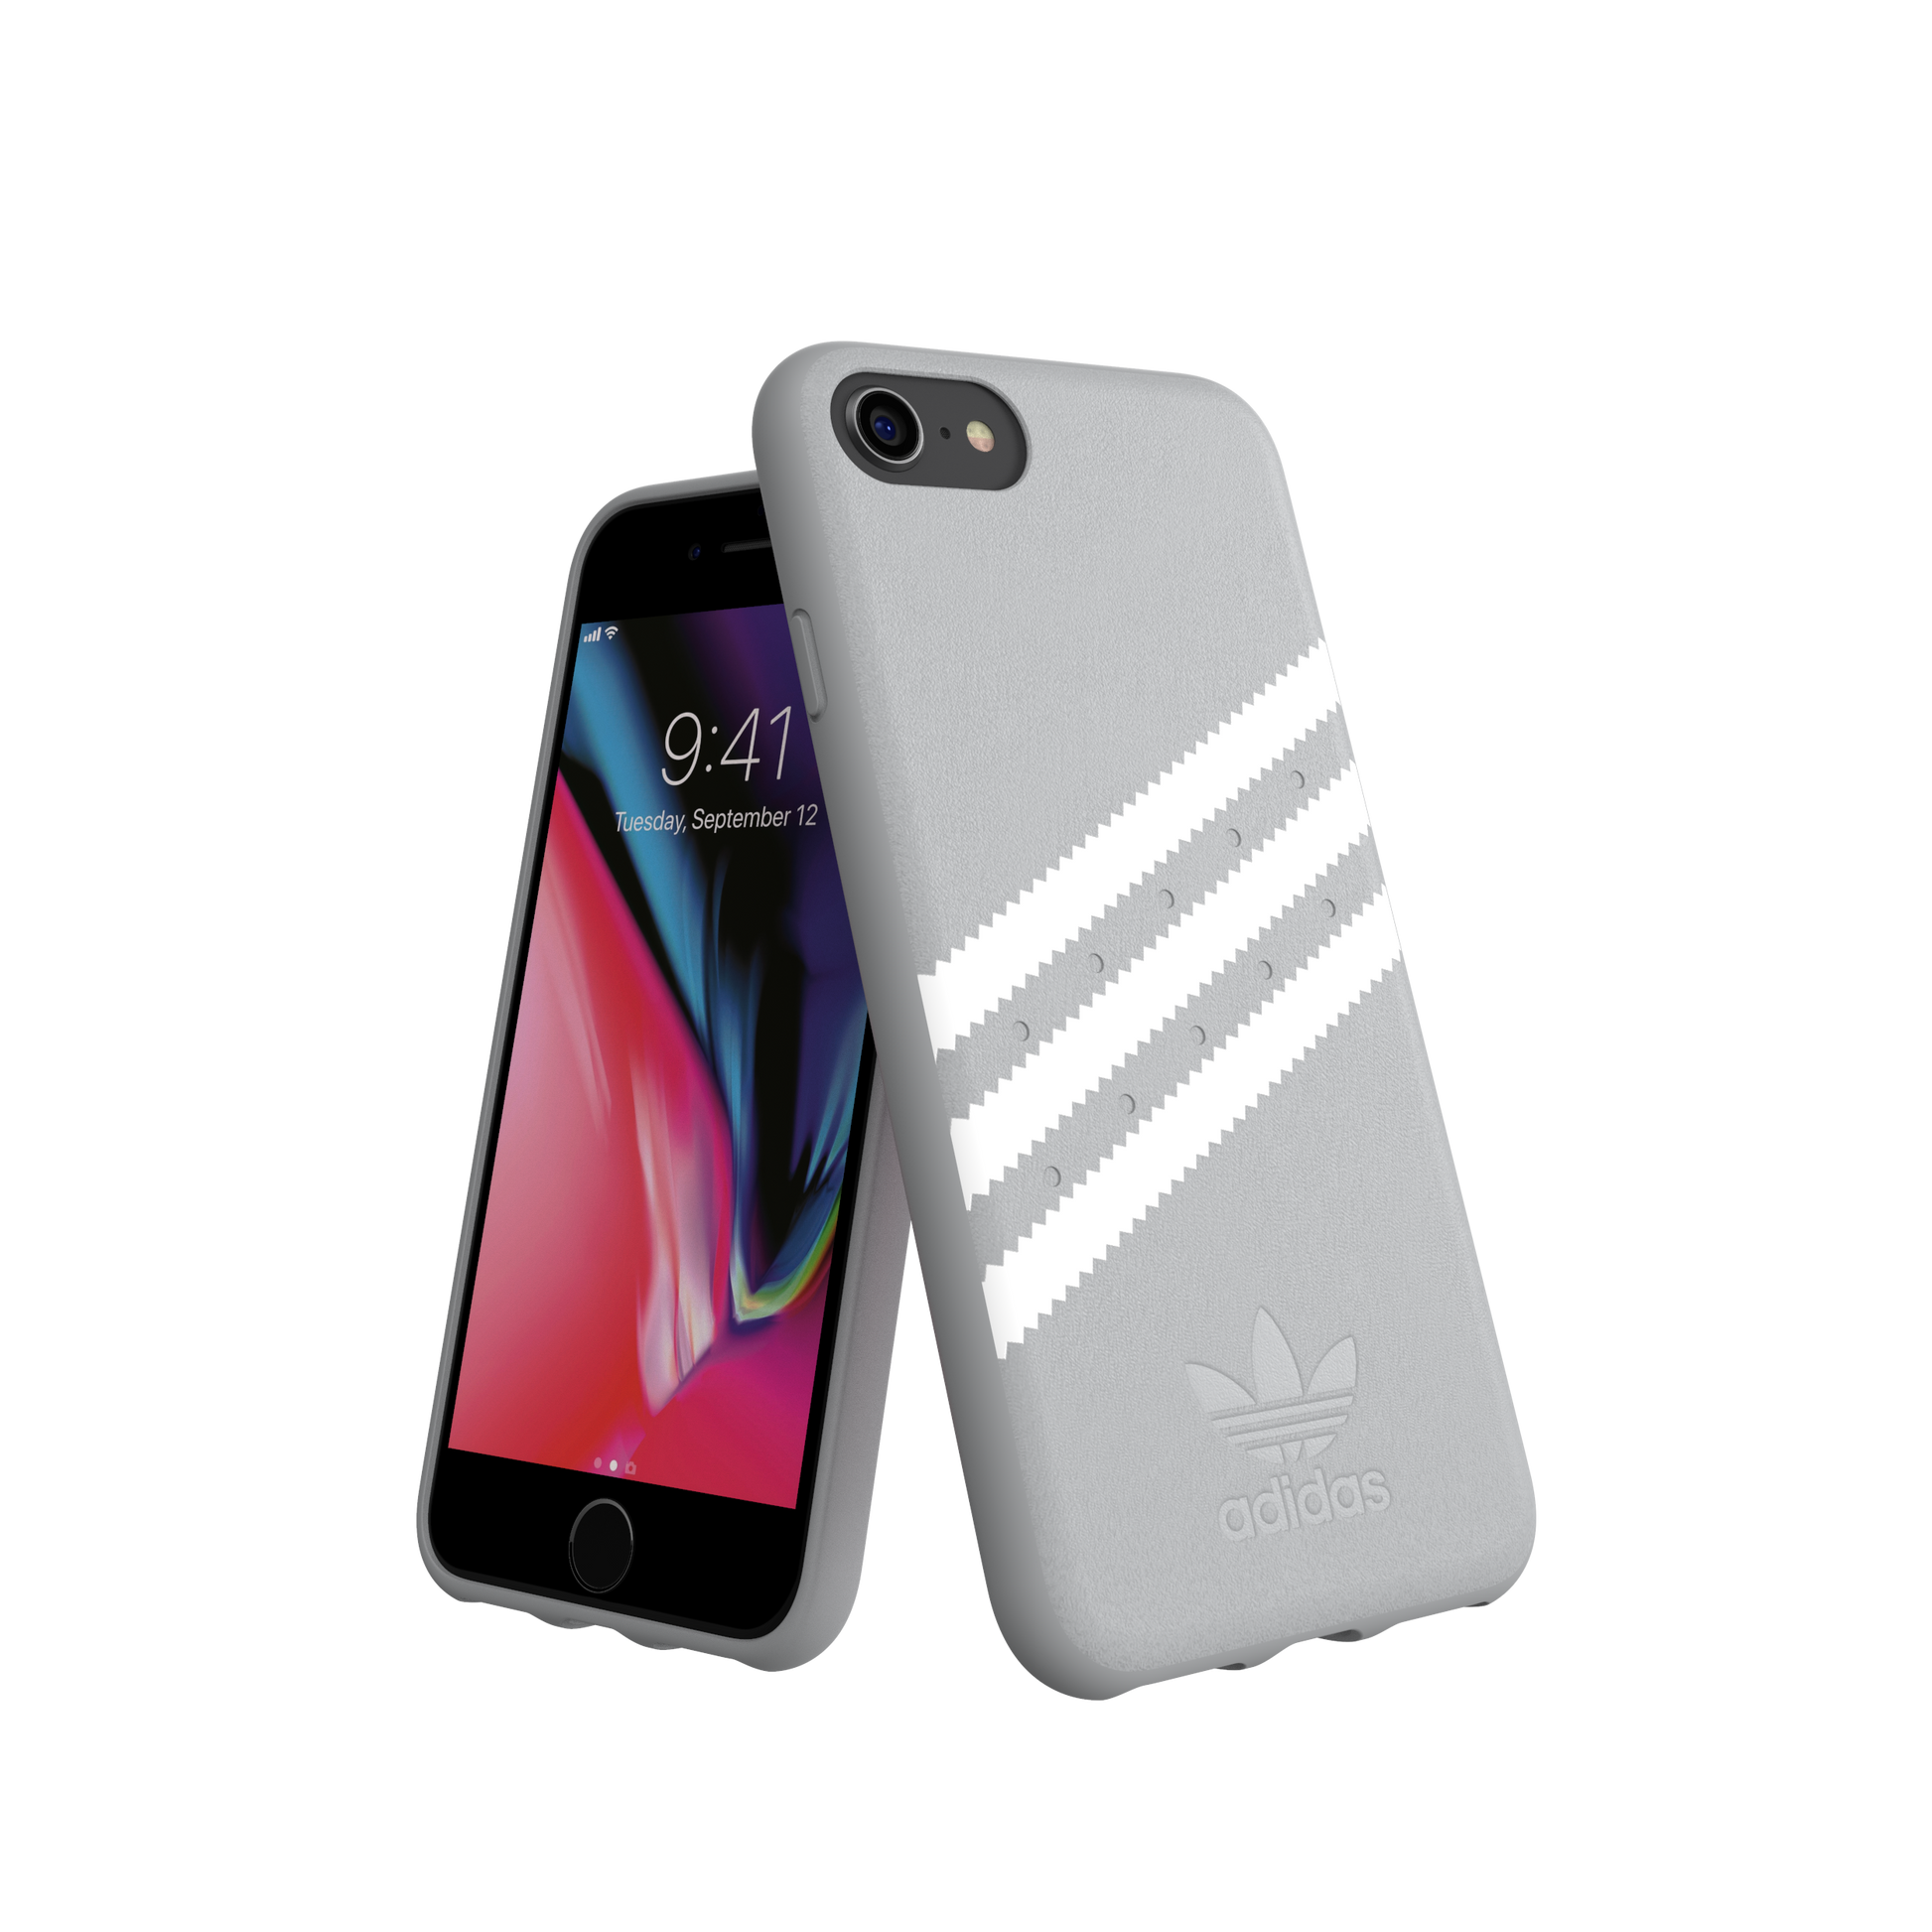 operador Universidad Jugar con Buy 3 Stripes Snap Case Gray and White iPhone | adidas-cases